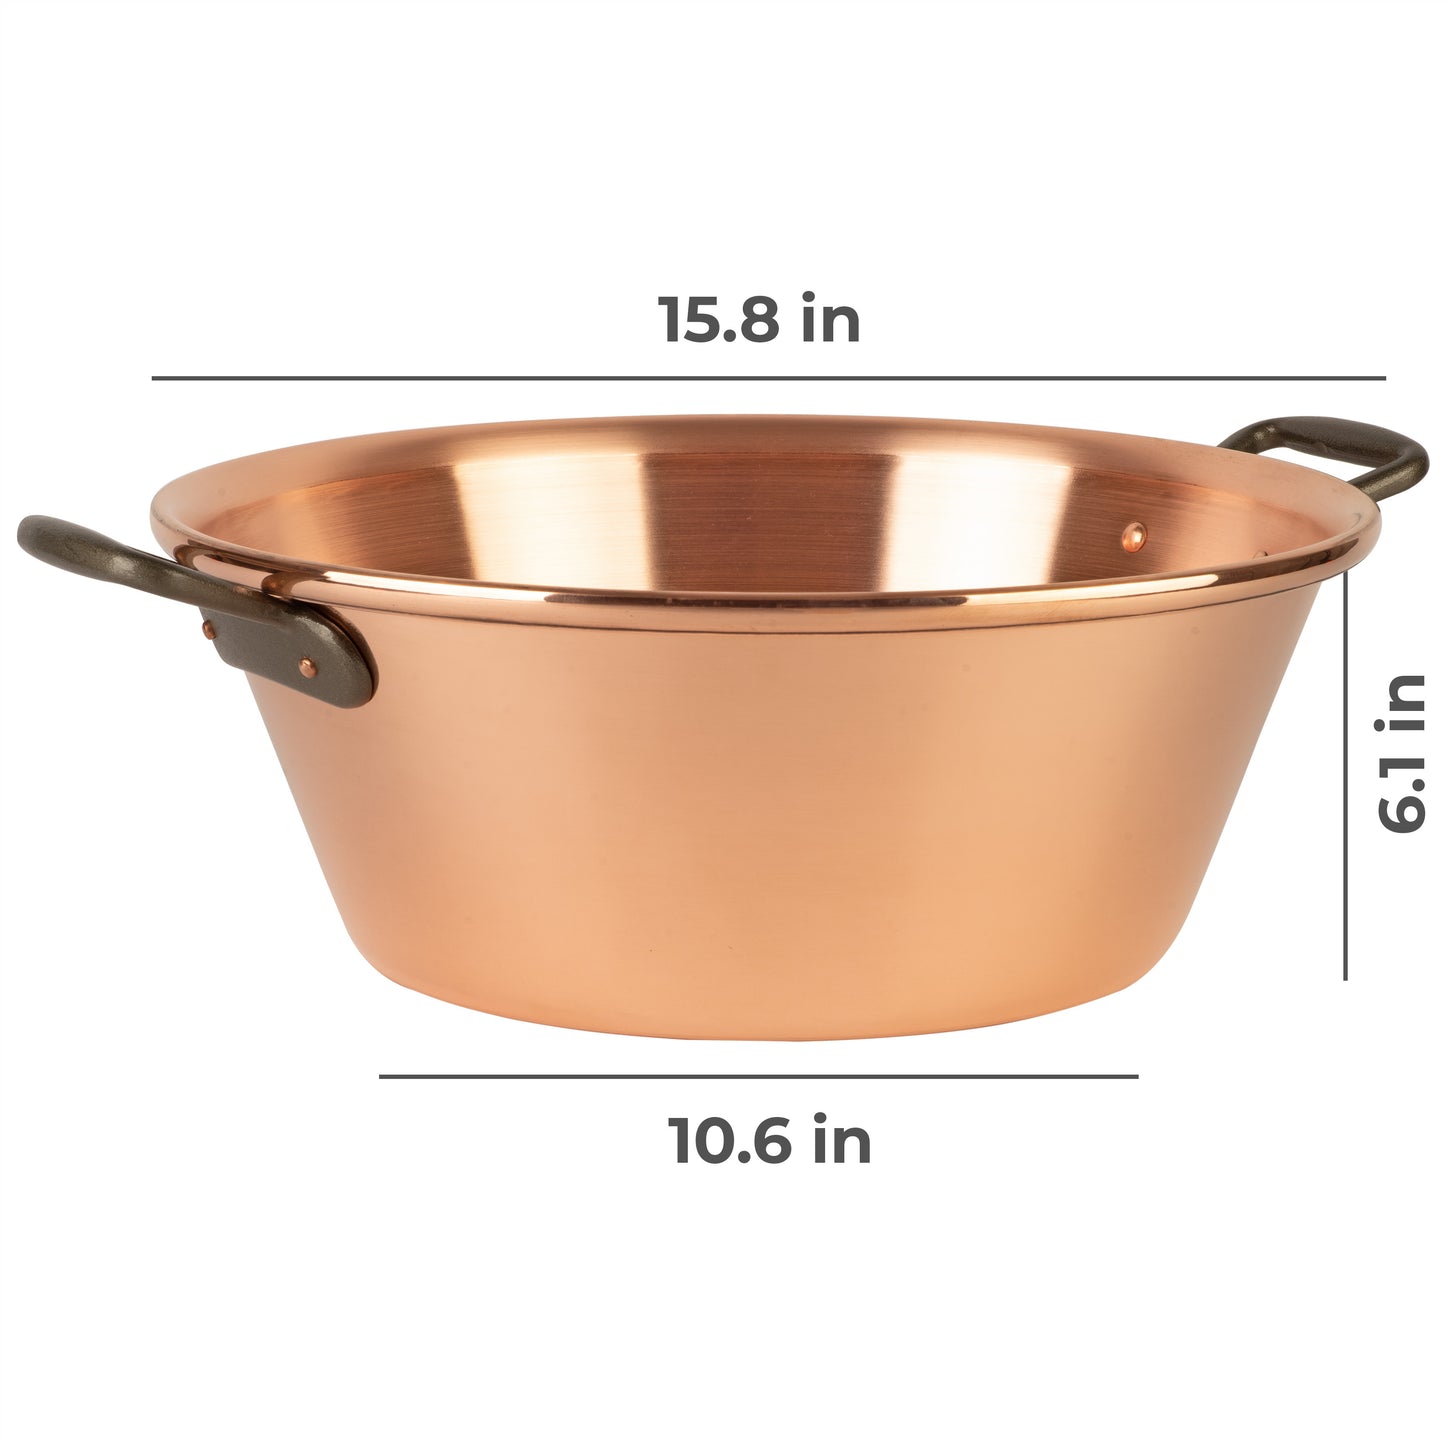 Copper jam pot with cast iron handles, 12.5 qt